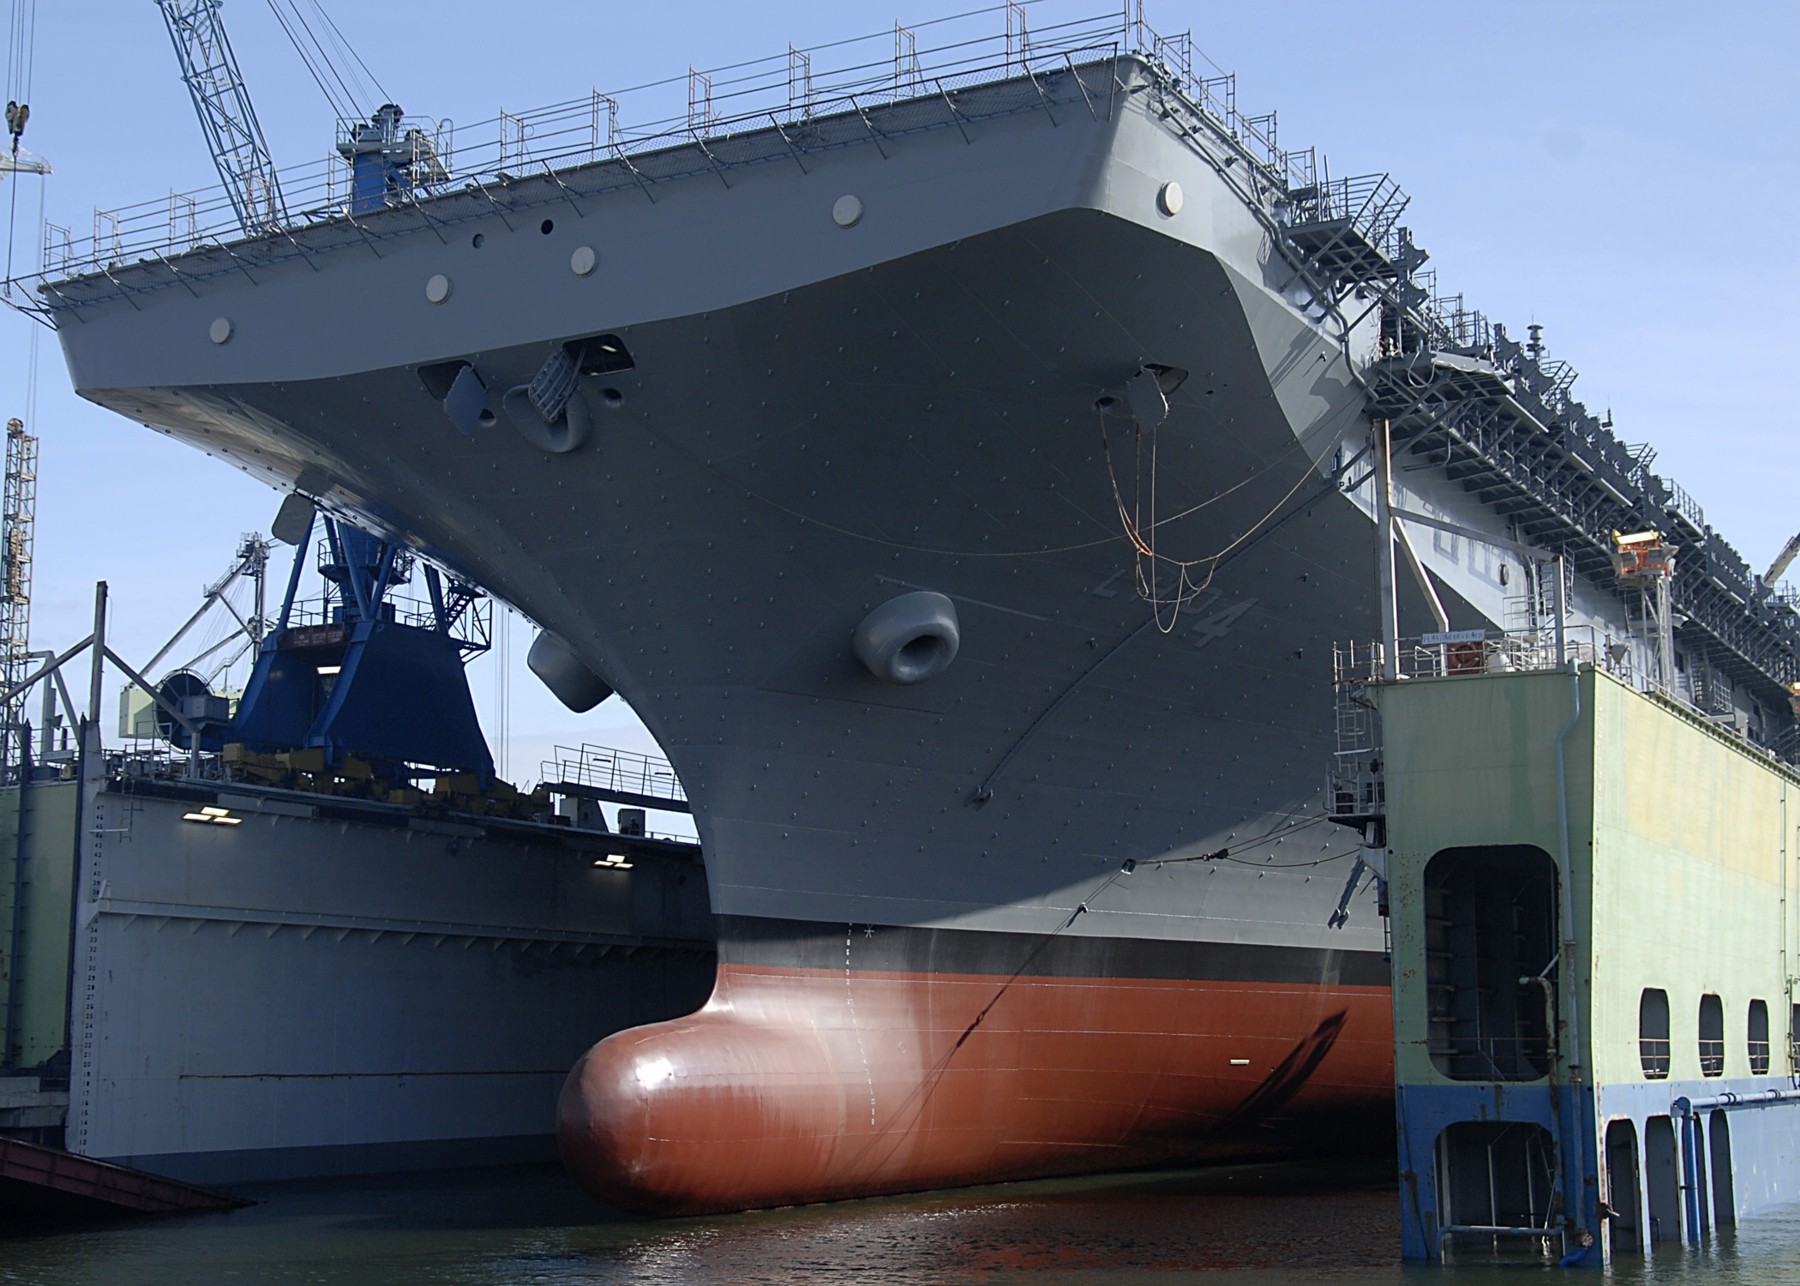 lhd-4 uss boxer wasp class amphibious assault ship dock landing us navy general dynamics nassco san diego 41